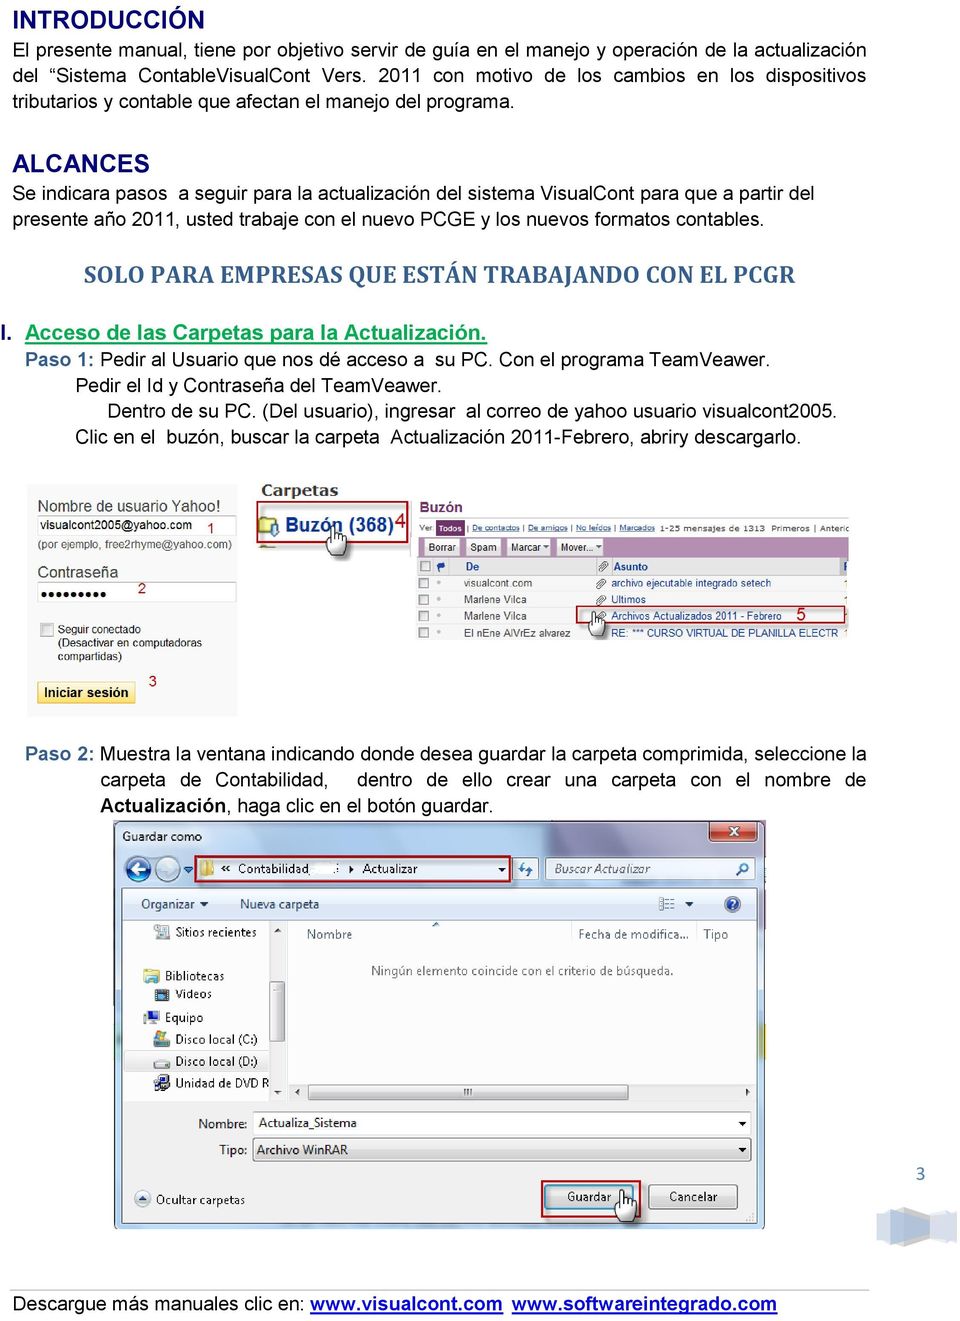 ALCANCES Se indicara pasos a seguir para la actualización del sistema VisualCont para que a partir del presente año 2011, usted trabaje con el nuevo PCGE y los nuevos formatos contables.